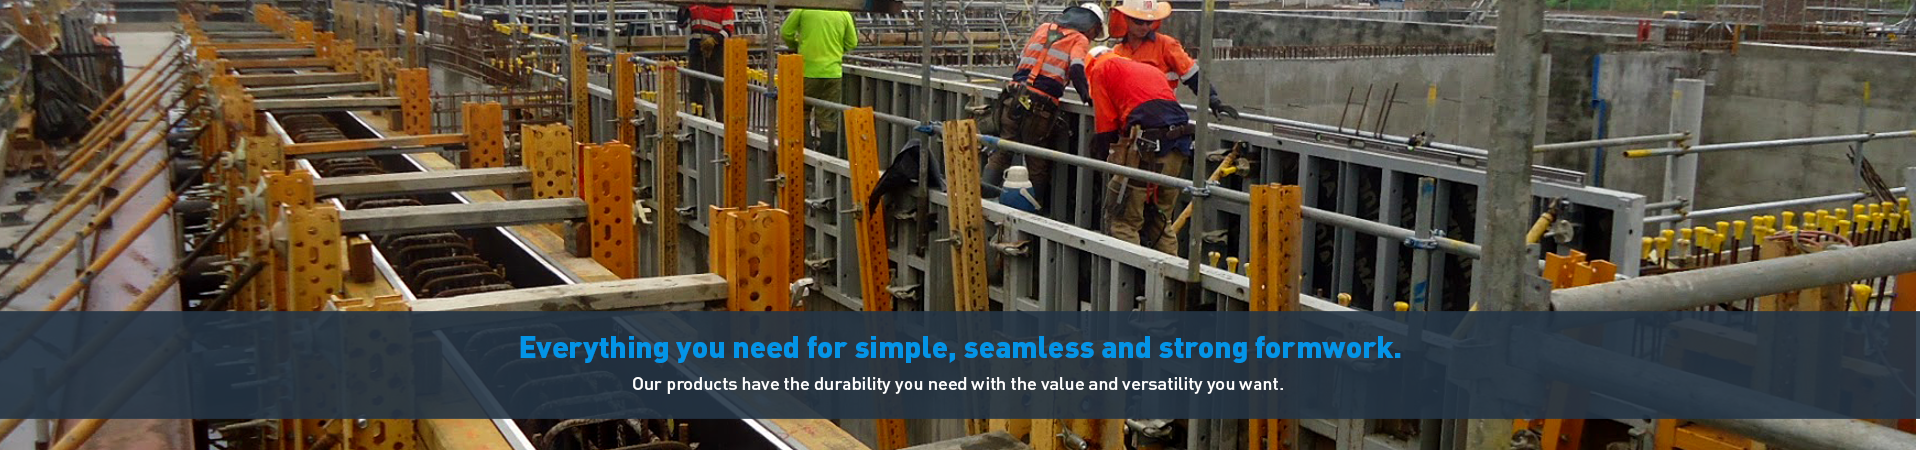 Australian Formwork, Concrete & Construction Supplies | Form Direct